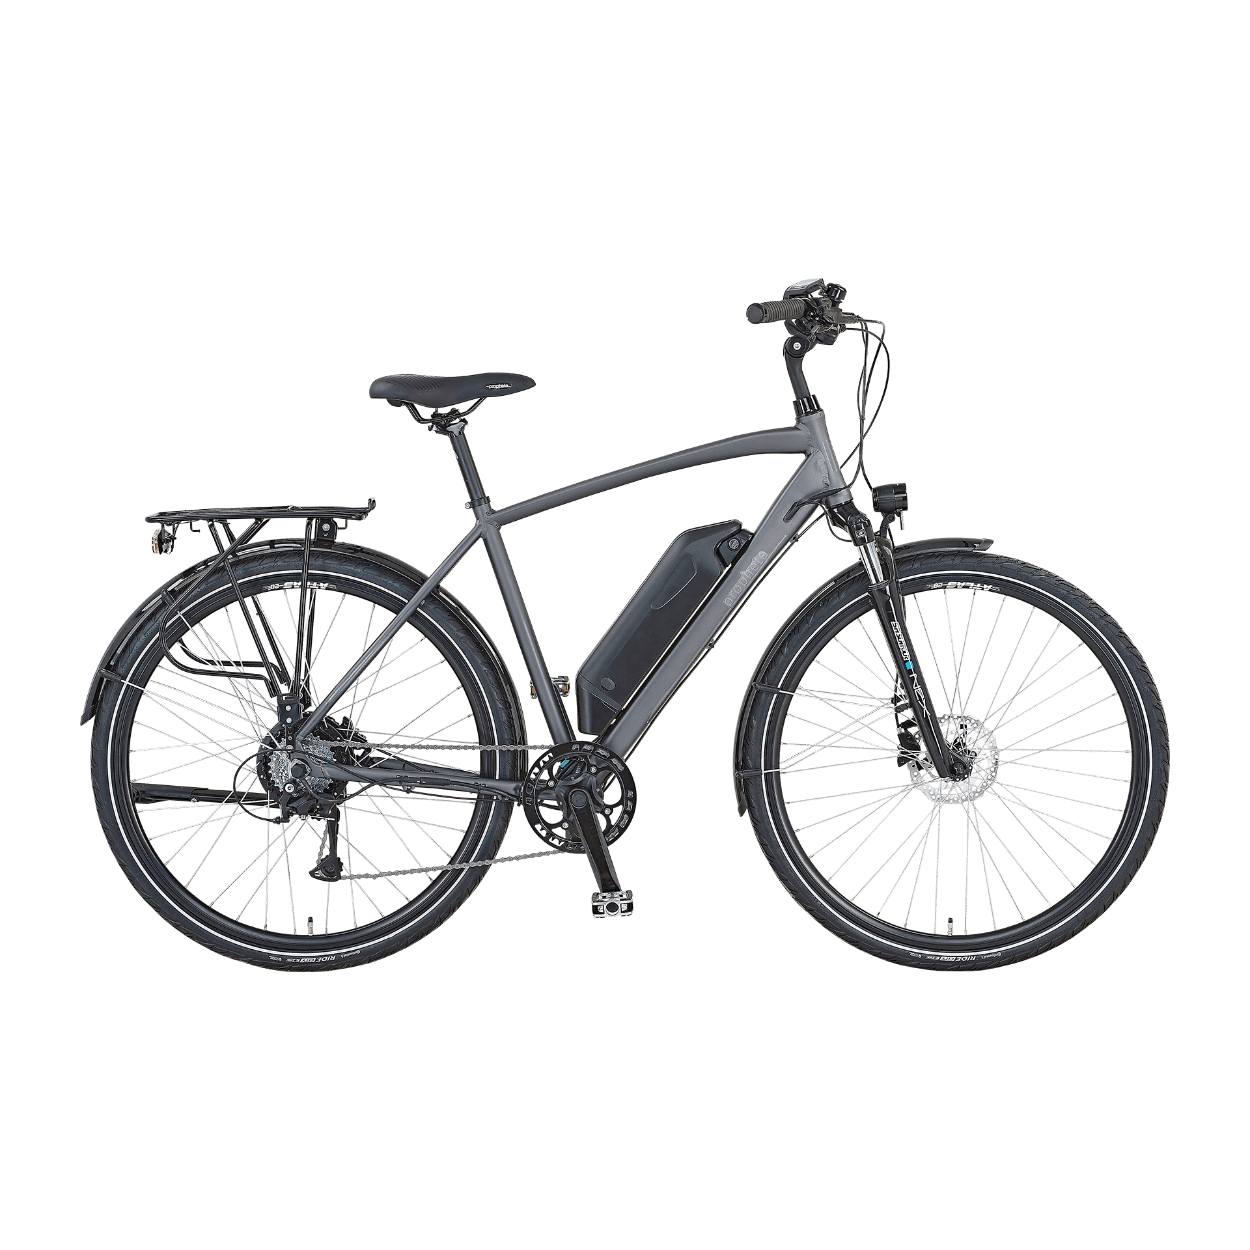 sz-l-r-zsasz-n-semleges-aldi-e-bike-2020-feloszt-elfogad-elveszett